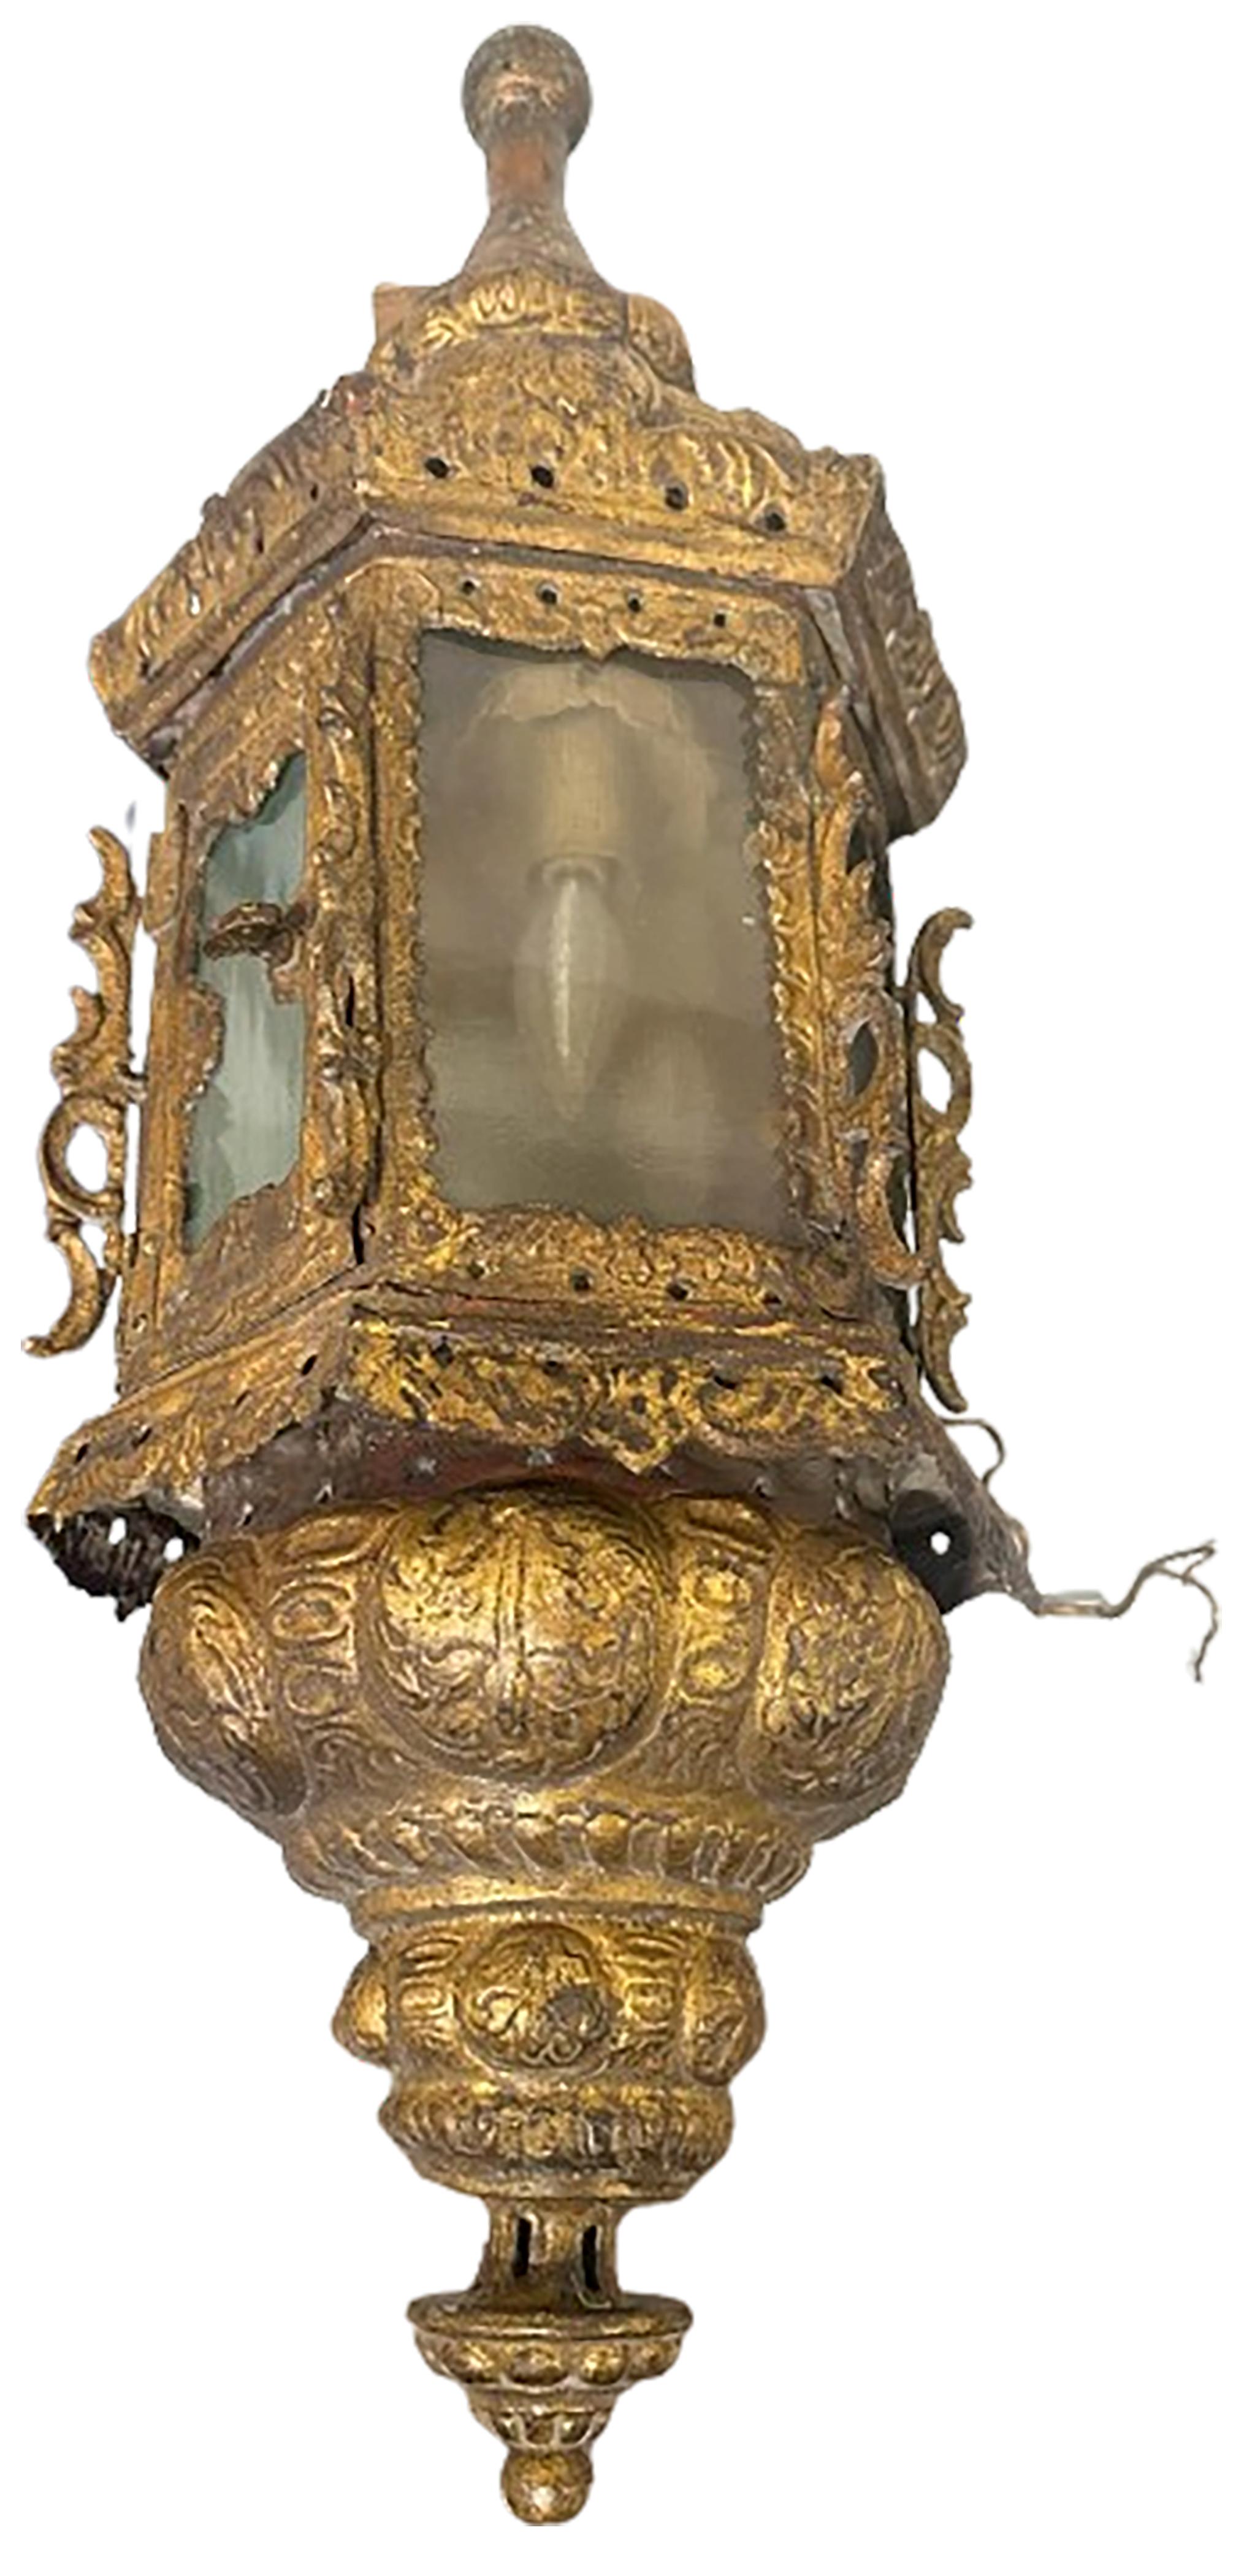 Paire d'appliques électriques en métal doré.  Fabriqué entre le 17e et le 18e siècle à Venise, en Italie. Ampoules incluses à l'intérieur. La quincaillerie pour l'installation murale est incluse au dos. Les deux appliques sont ornées de motifs